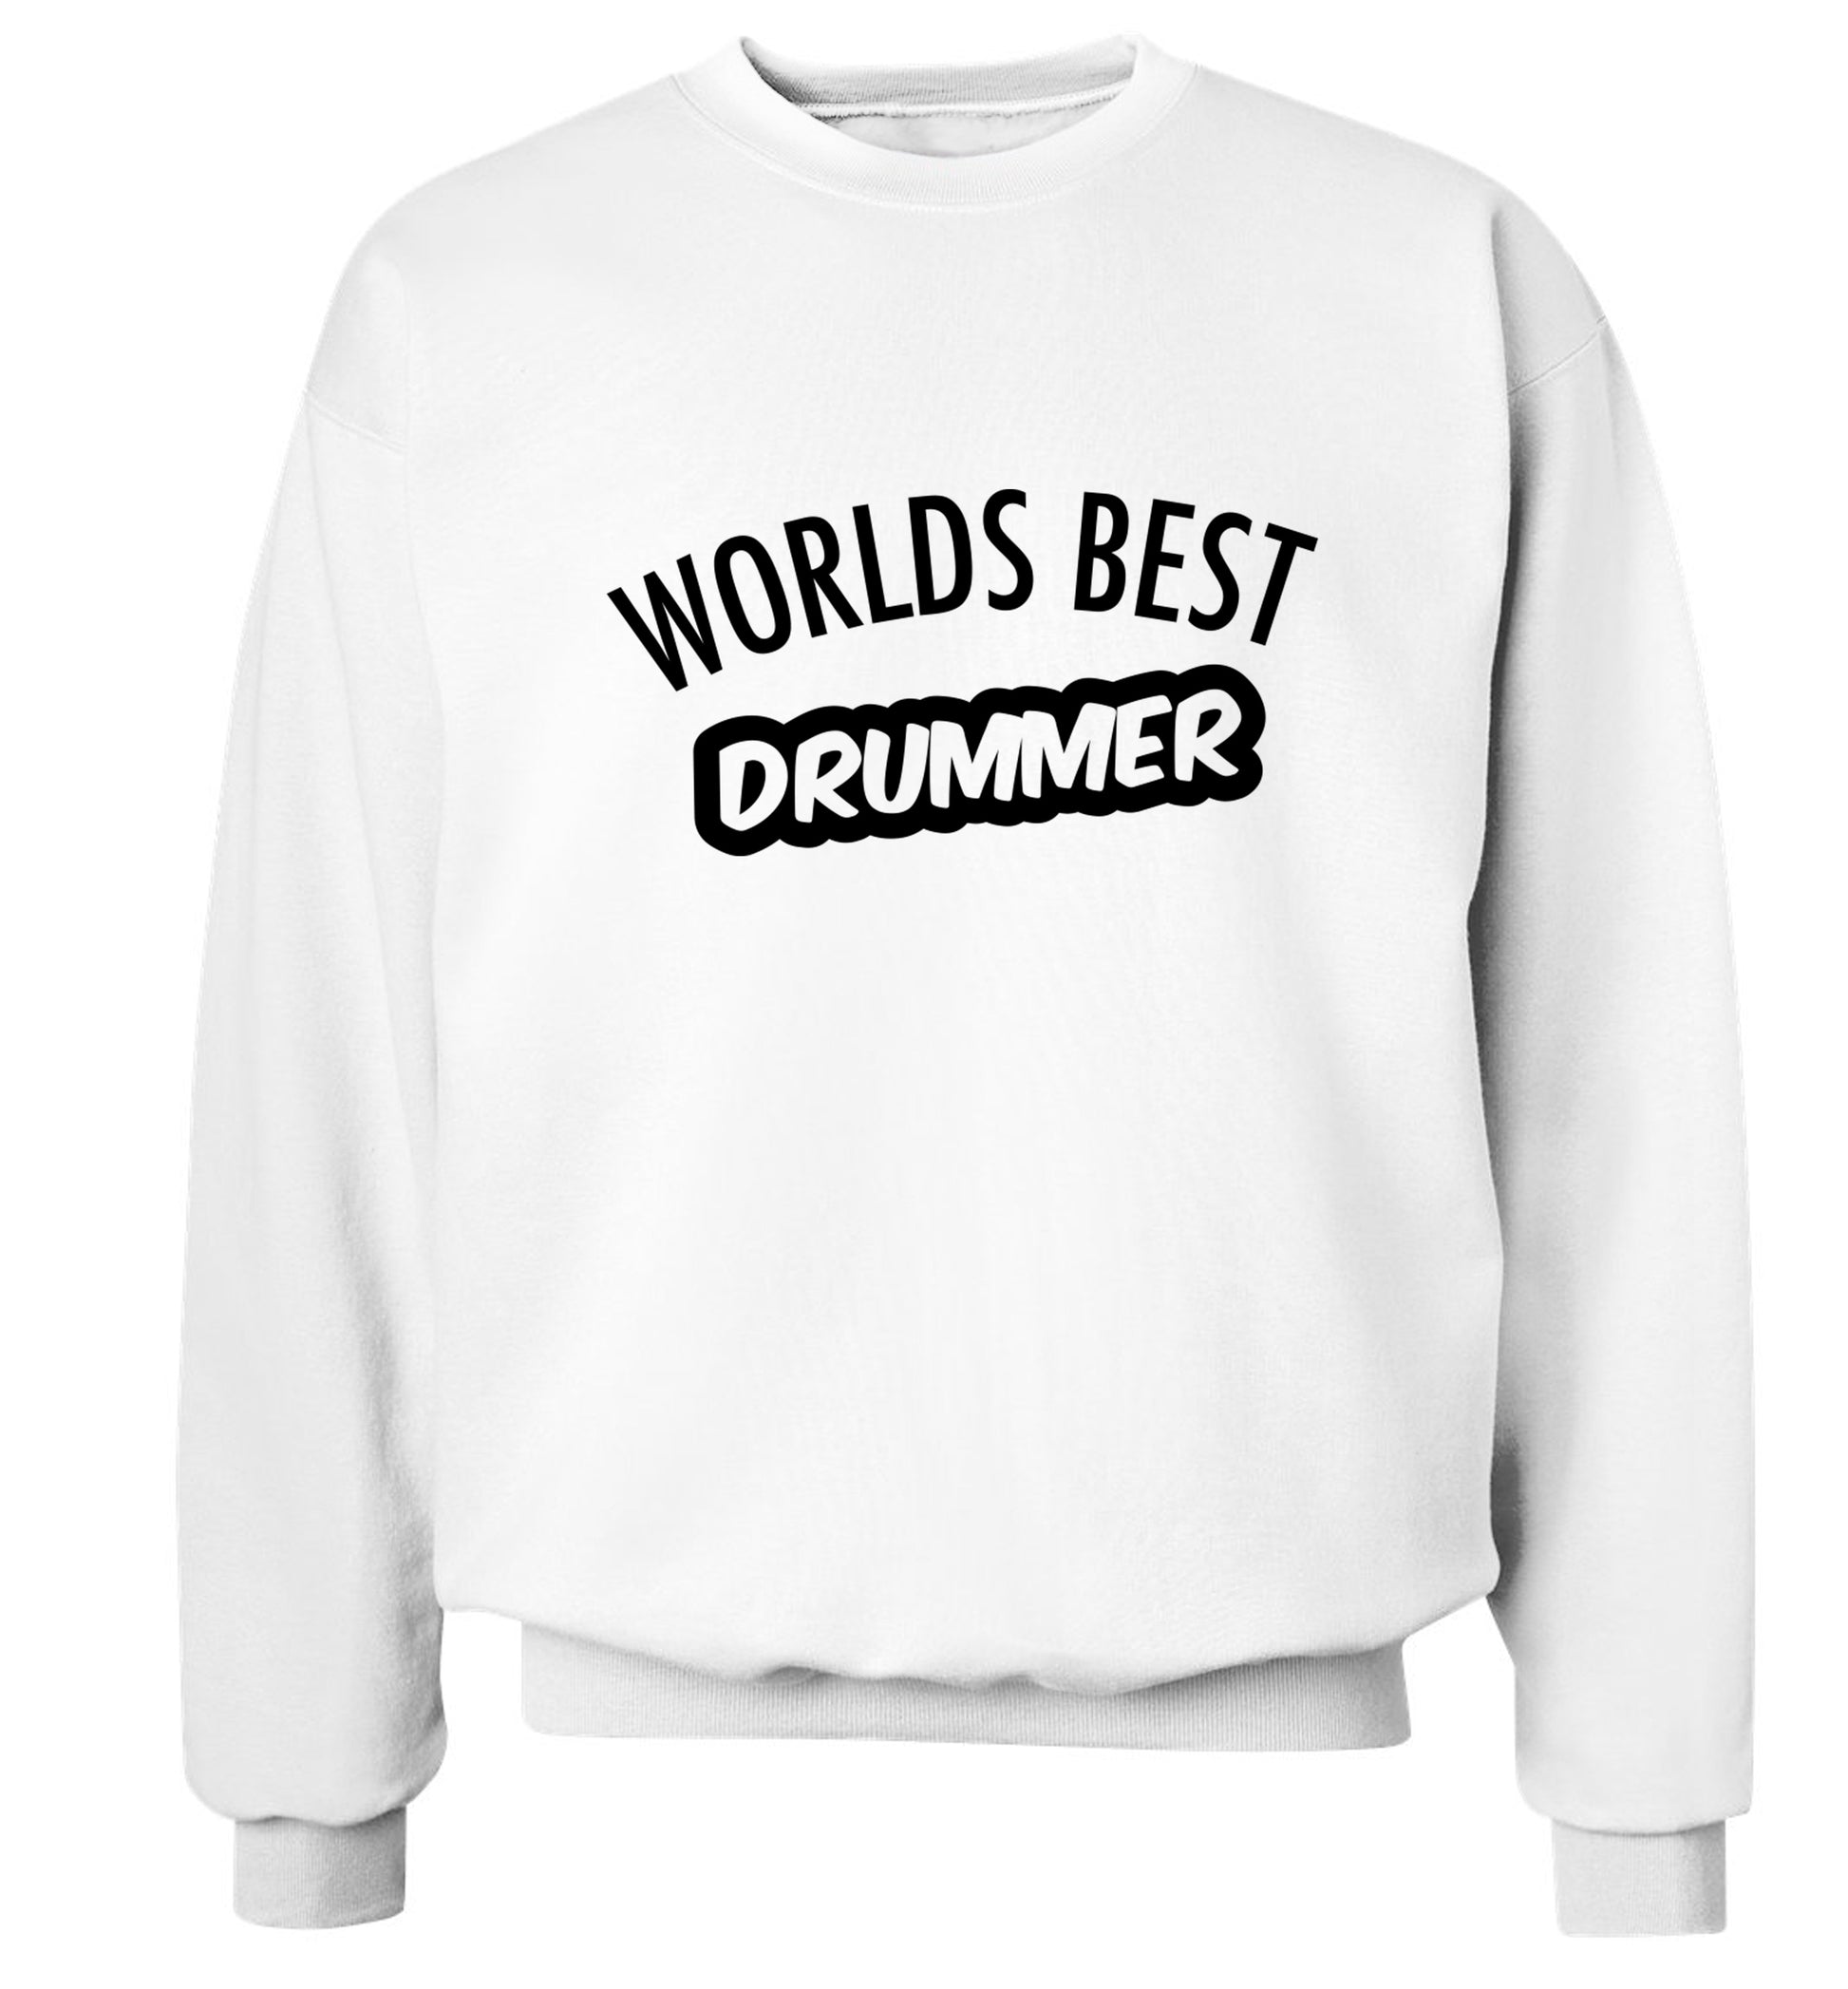 Worlds best drummer Adult's unisex white Sweater 2XL